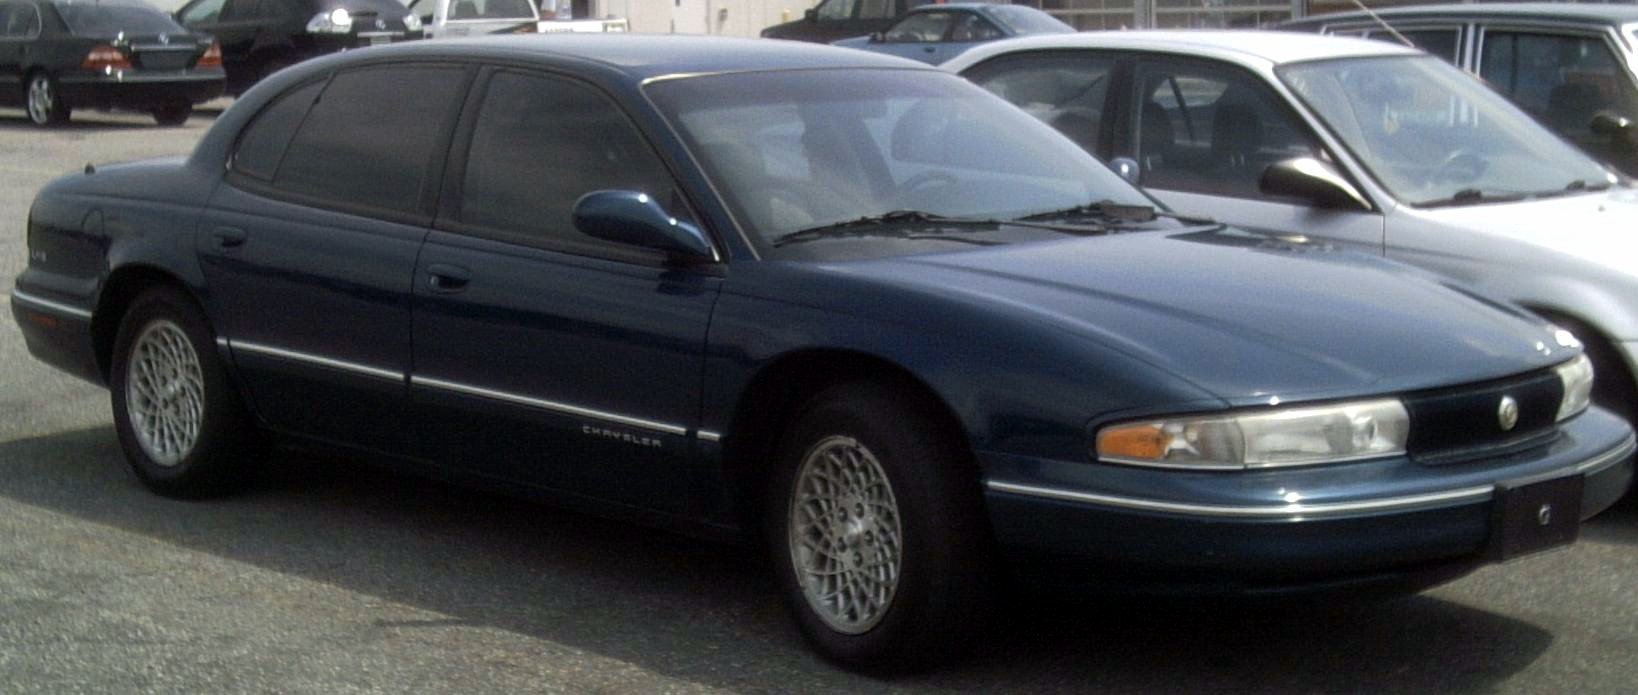 1997 Chrysler